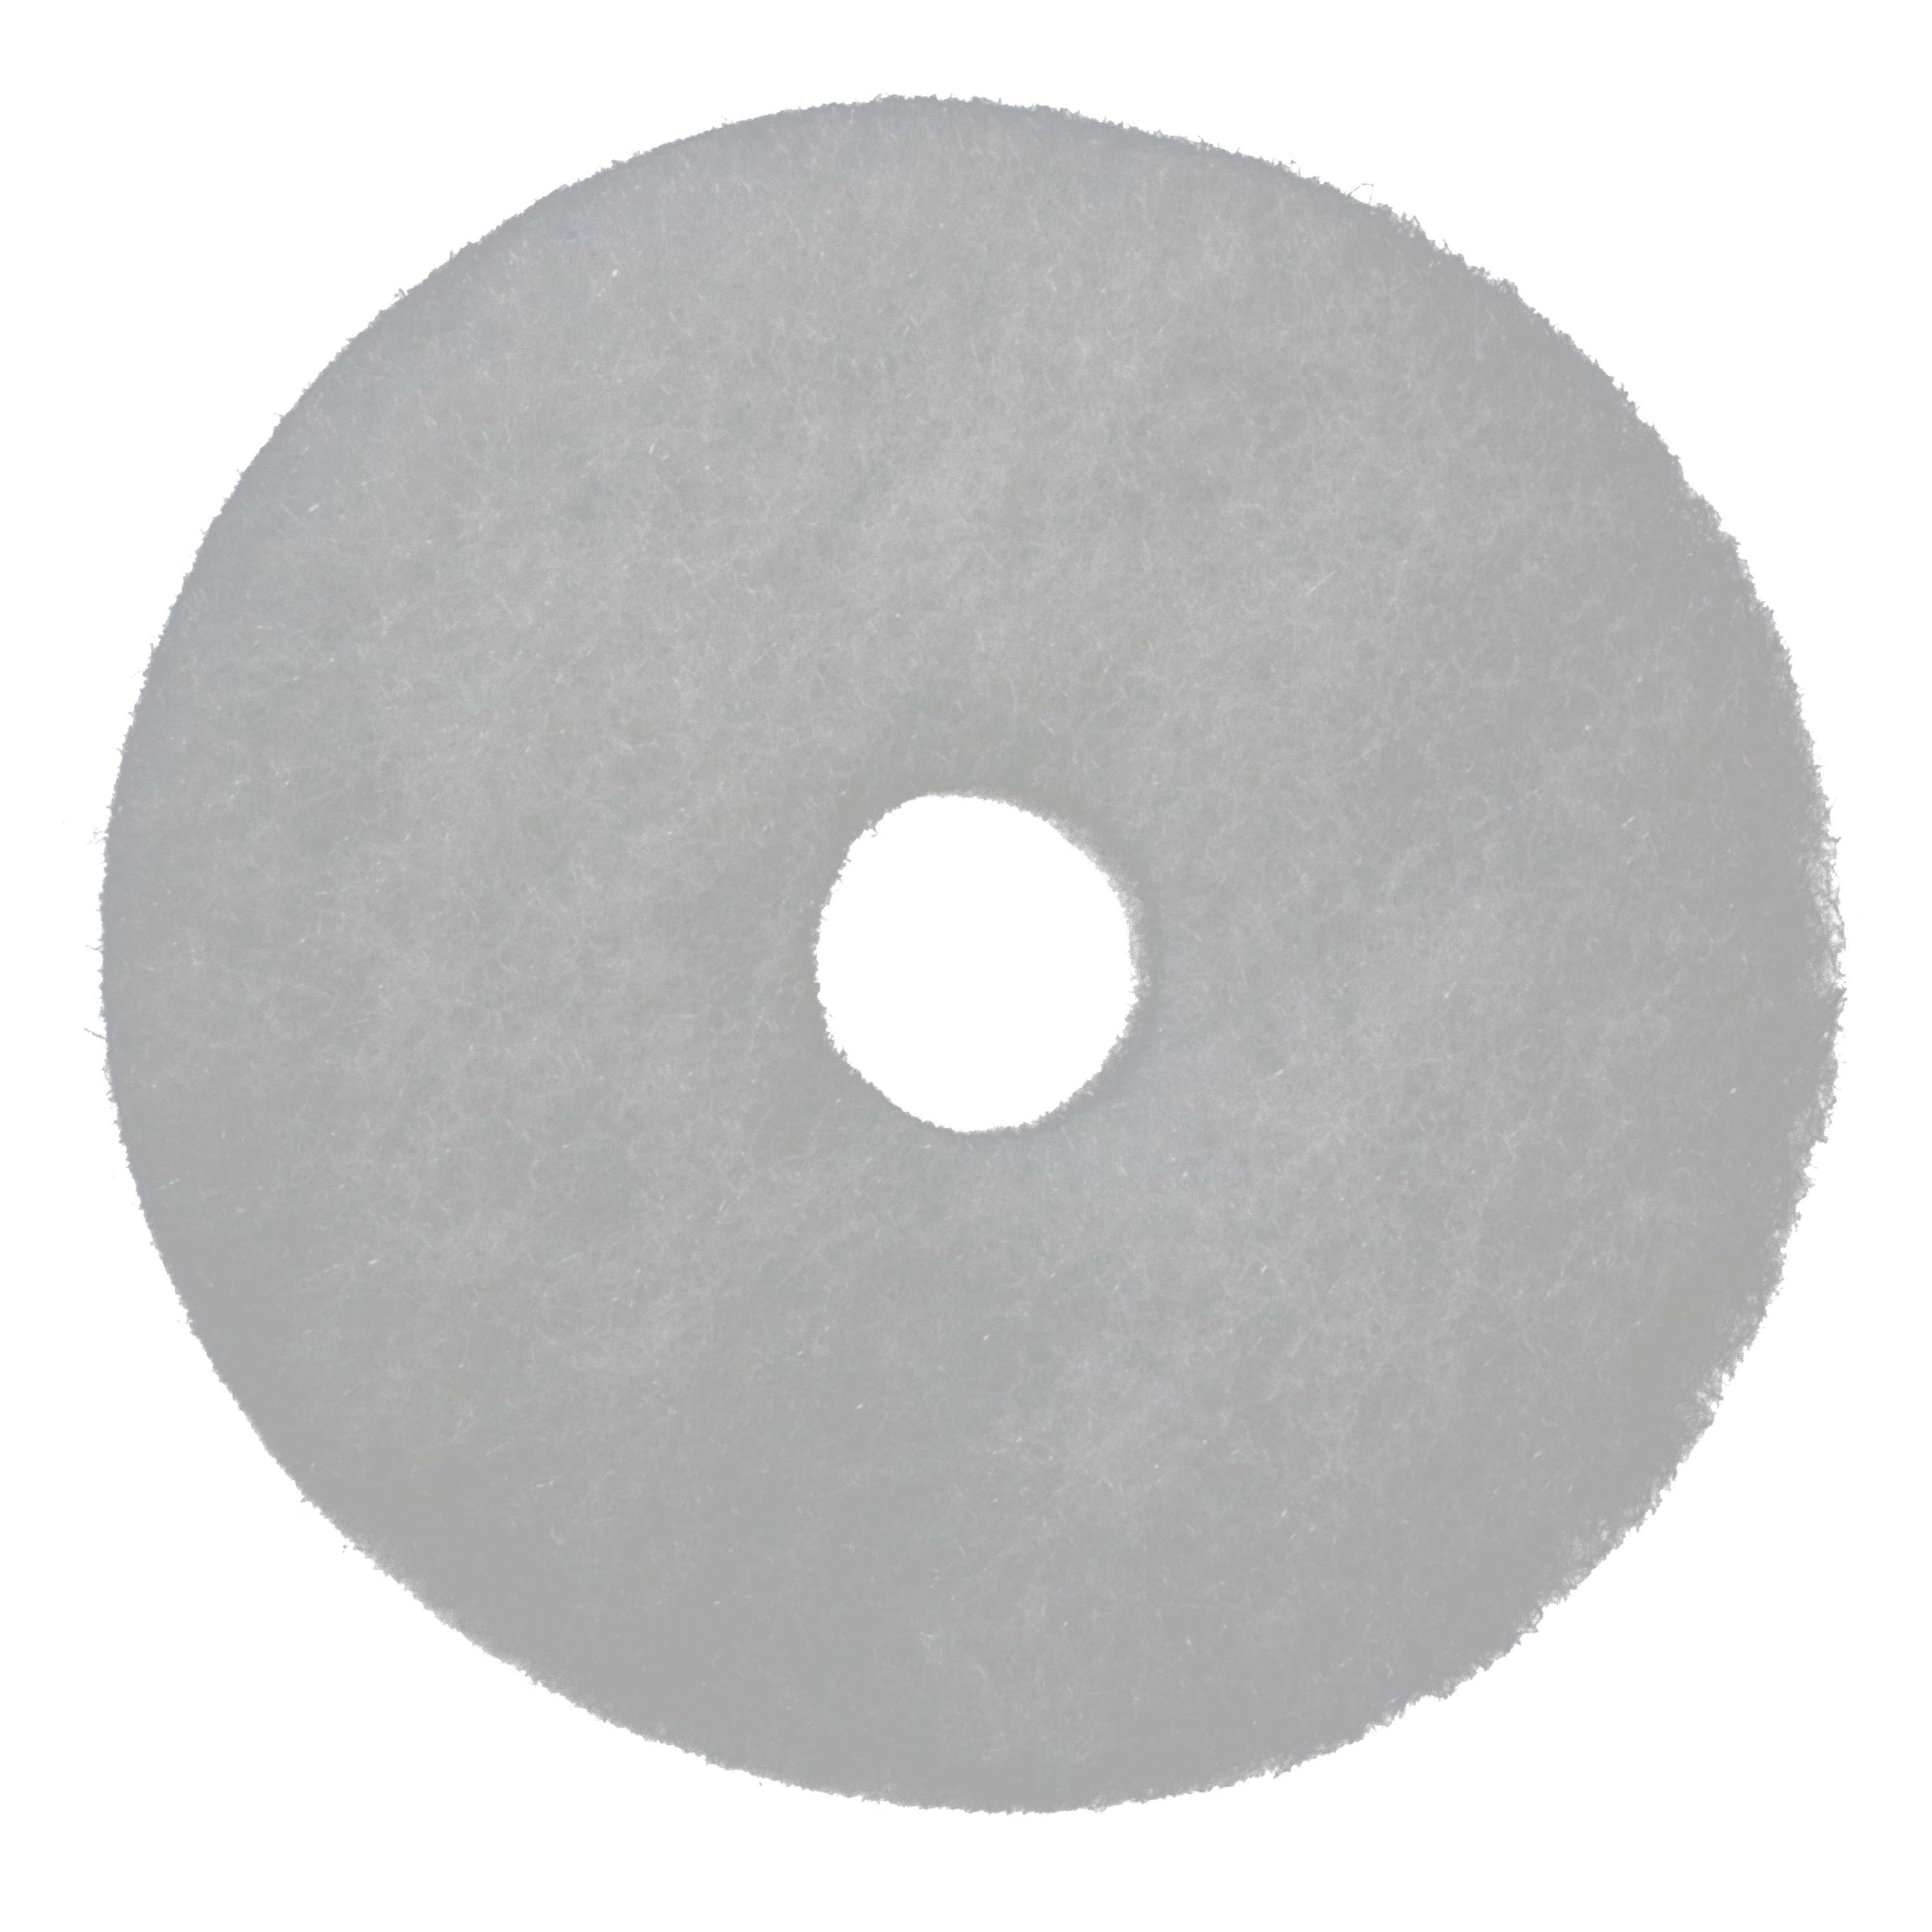 Filter fleece, round, fine, white